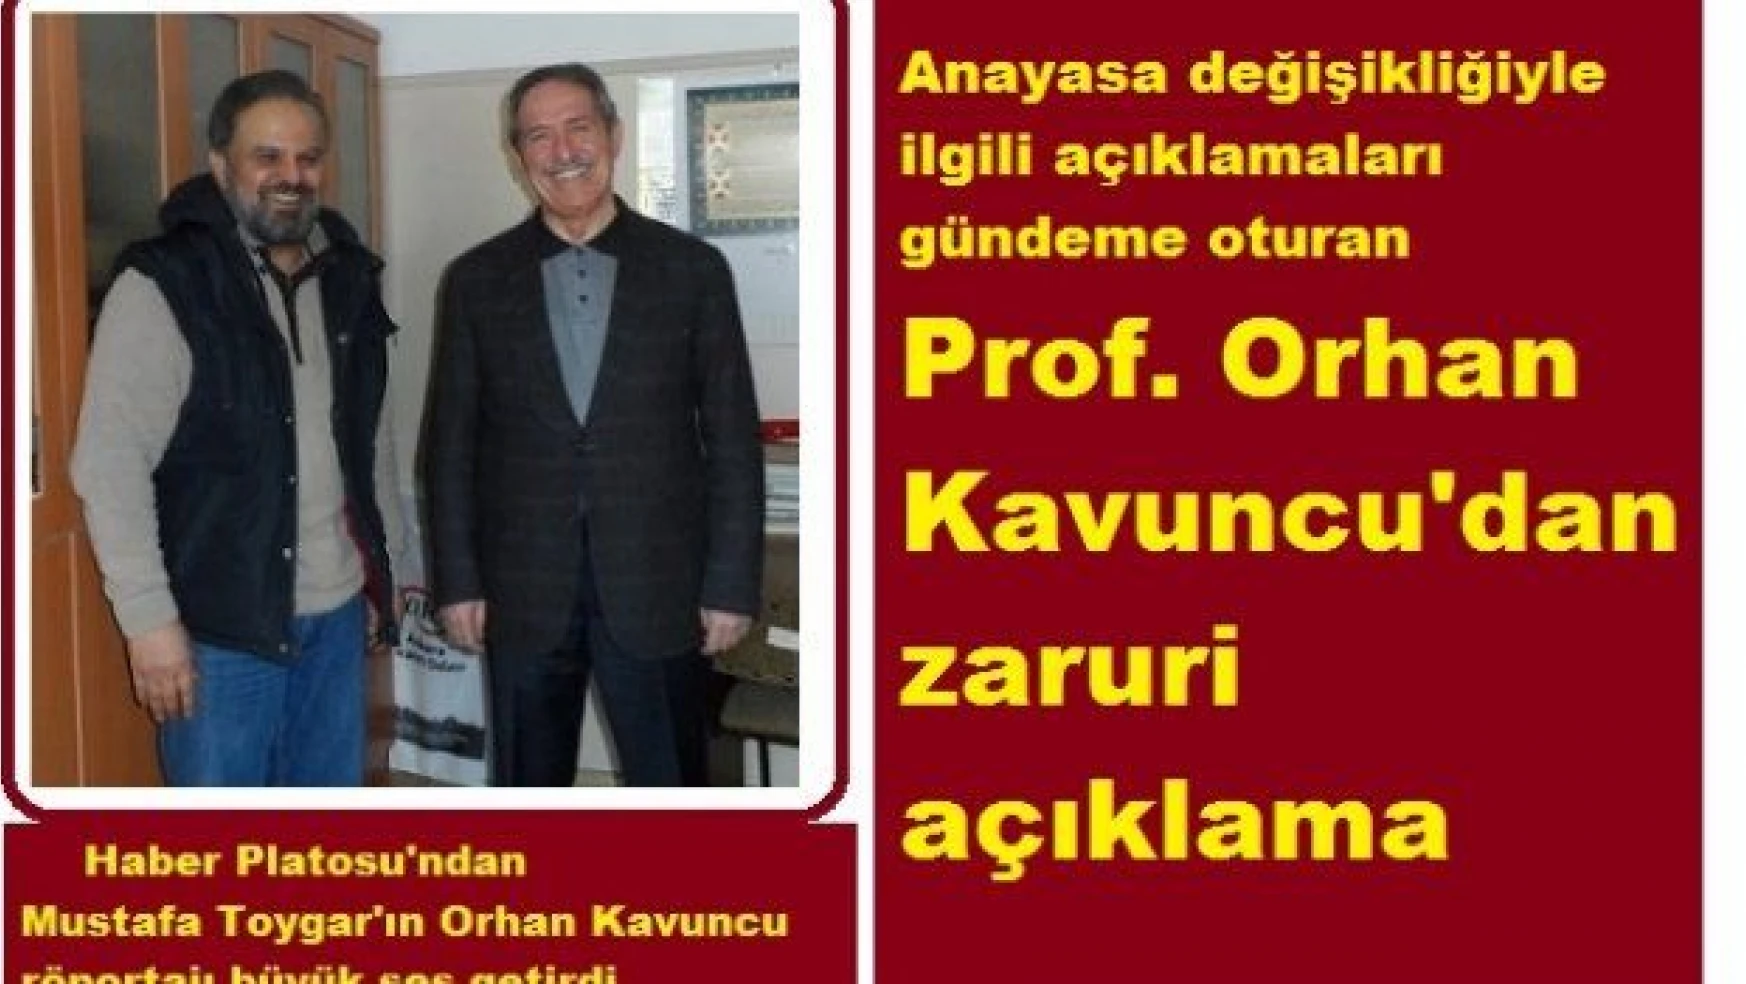 'Anayasa' açıklamaları gündeme oturan Prof. Orhan Kavuncu'dan mesaj var